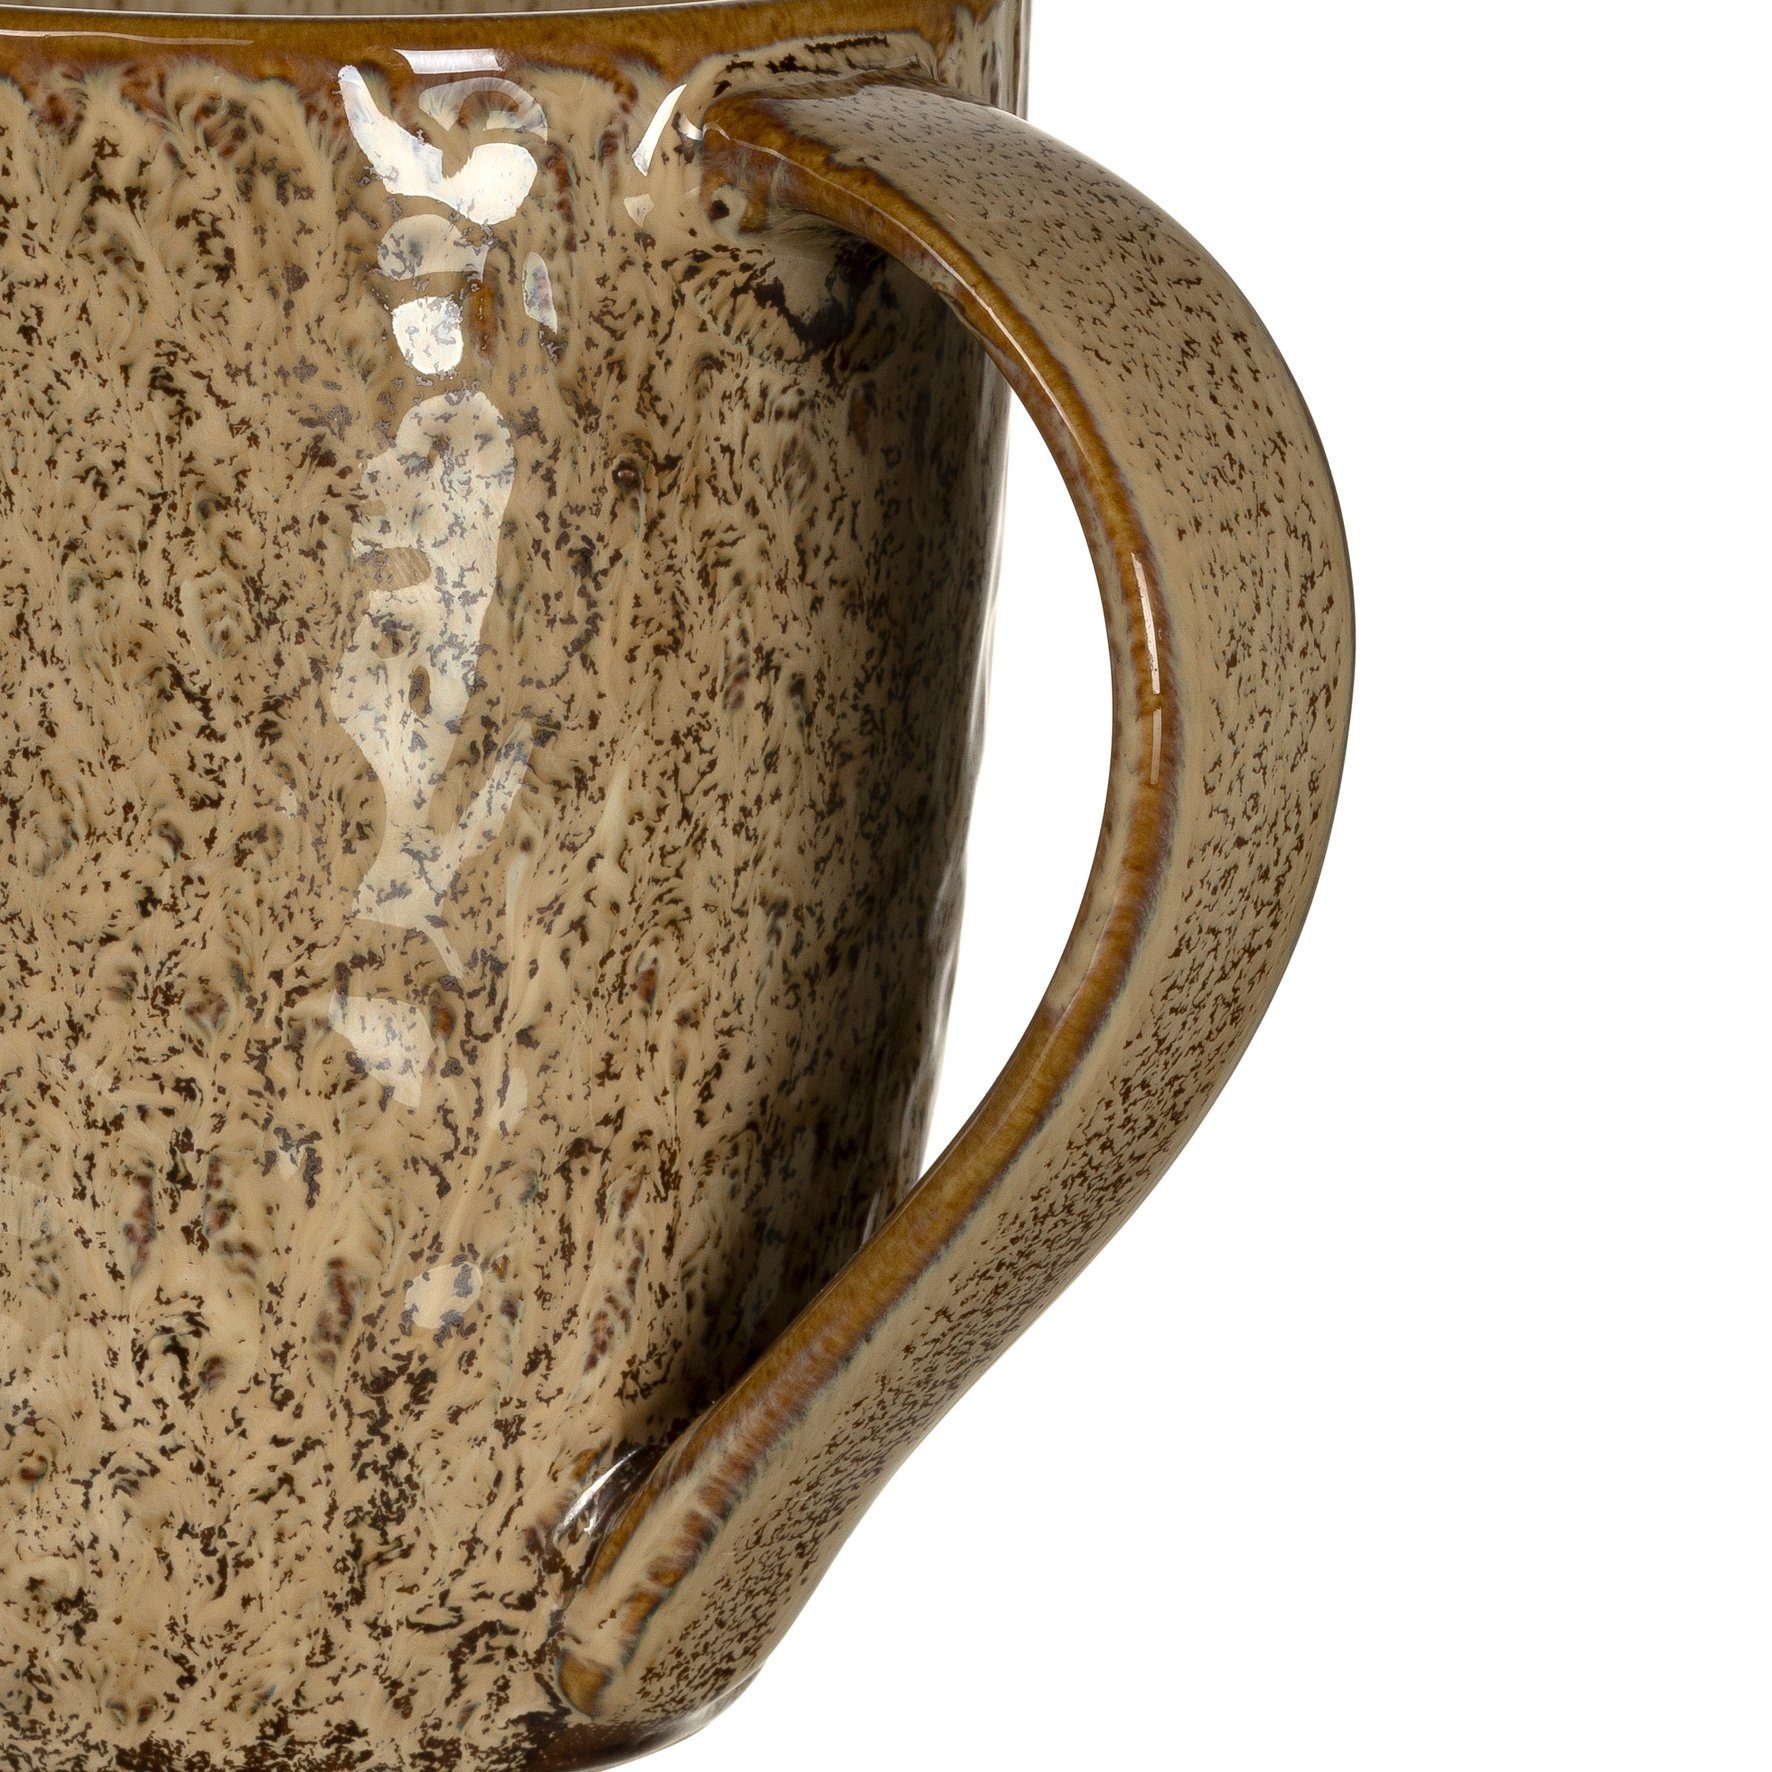 430 Matera, ml, Becher 6-teilig sand Keramik, LEONARDO